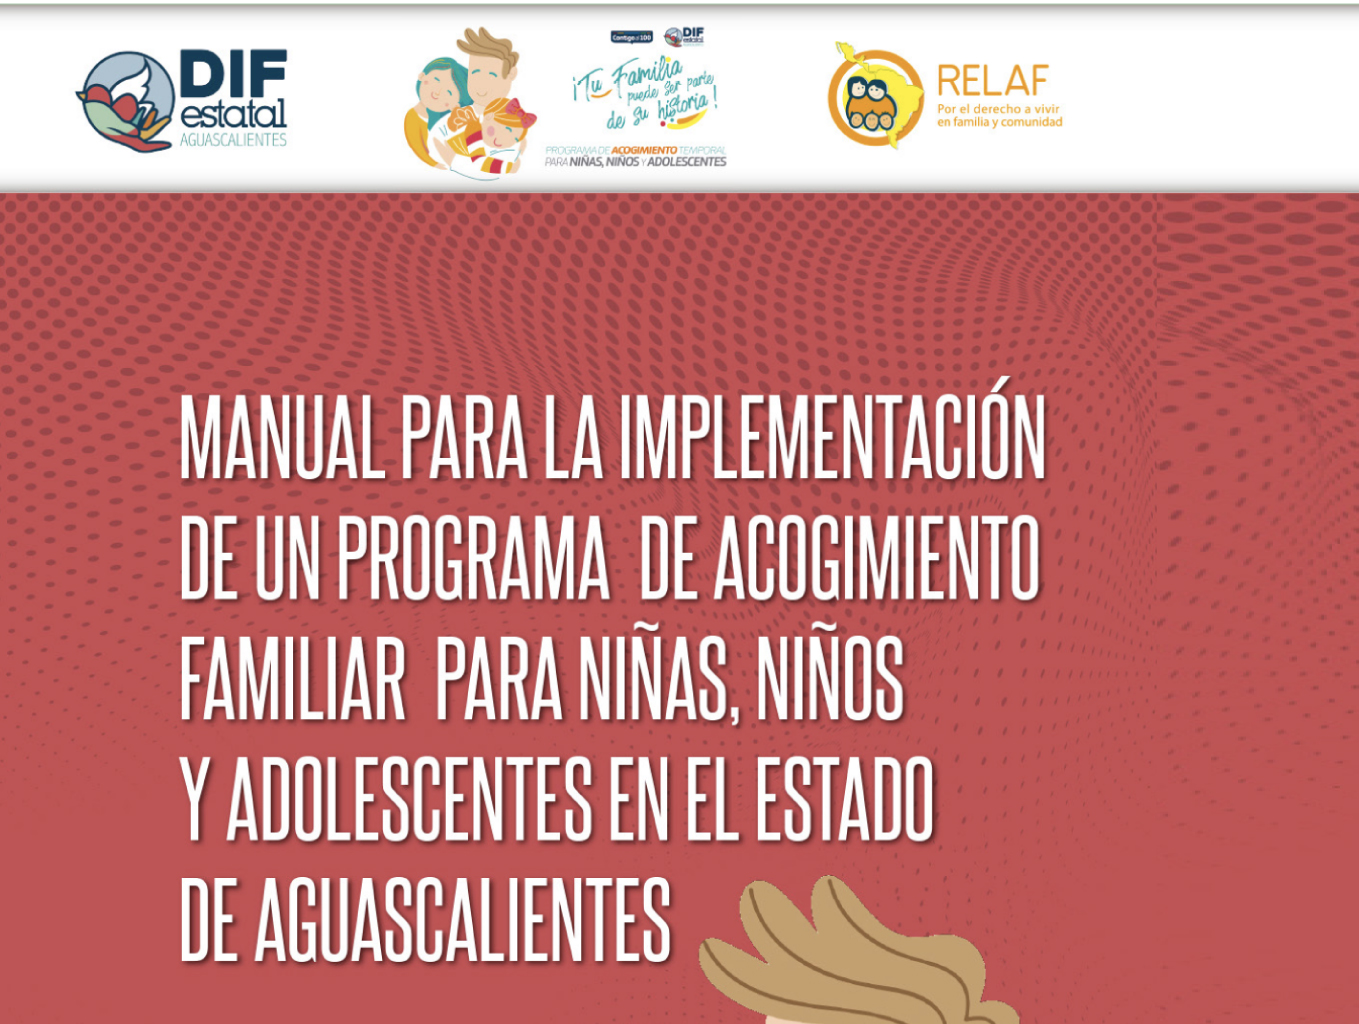 Manual para la implementación de un programa de acogimiento familiar para niñas, niños y adolescentes en el estado de Aguascalientes